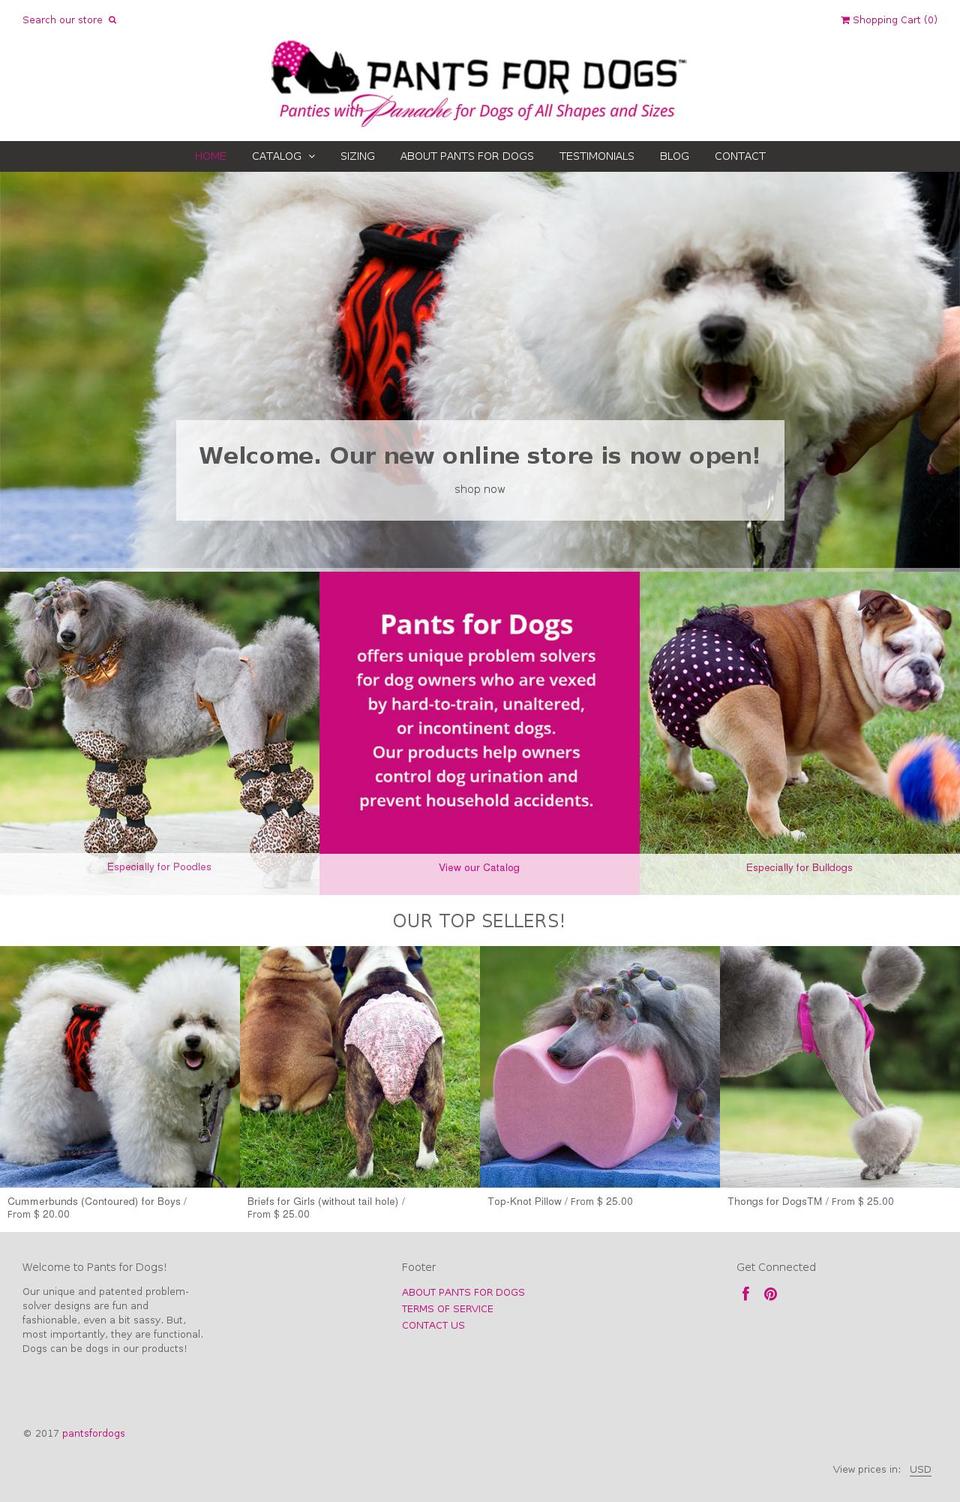 pantsfordogs.com shopify website screenshot